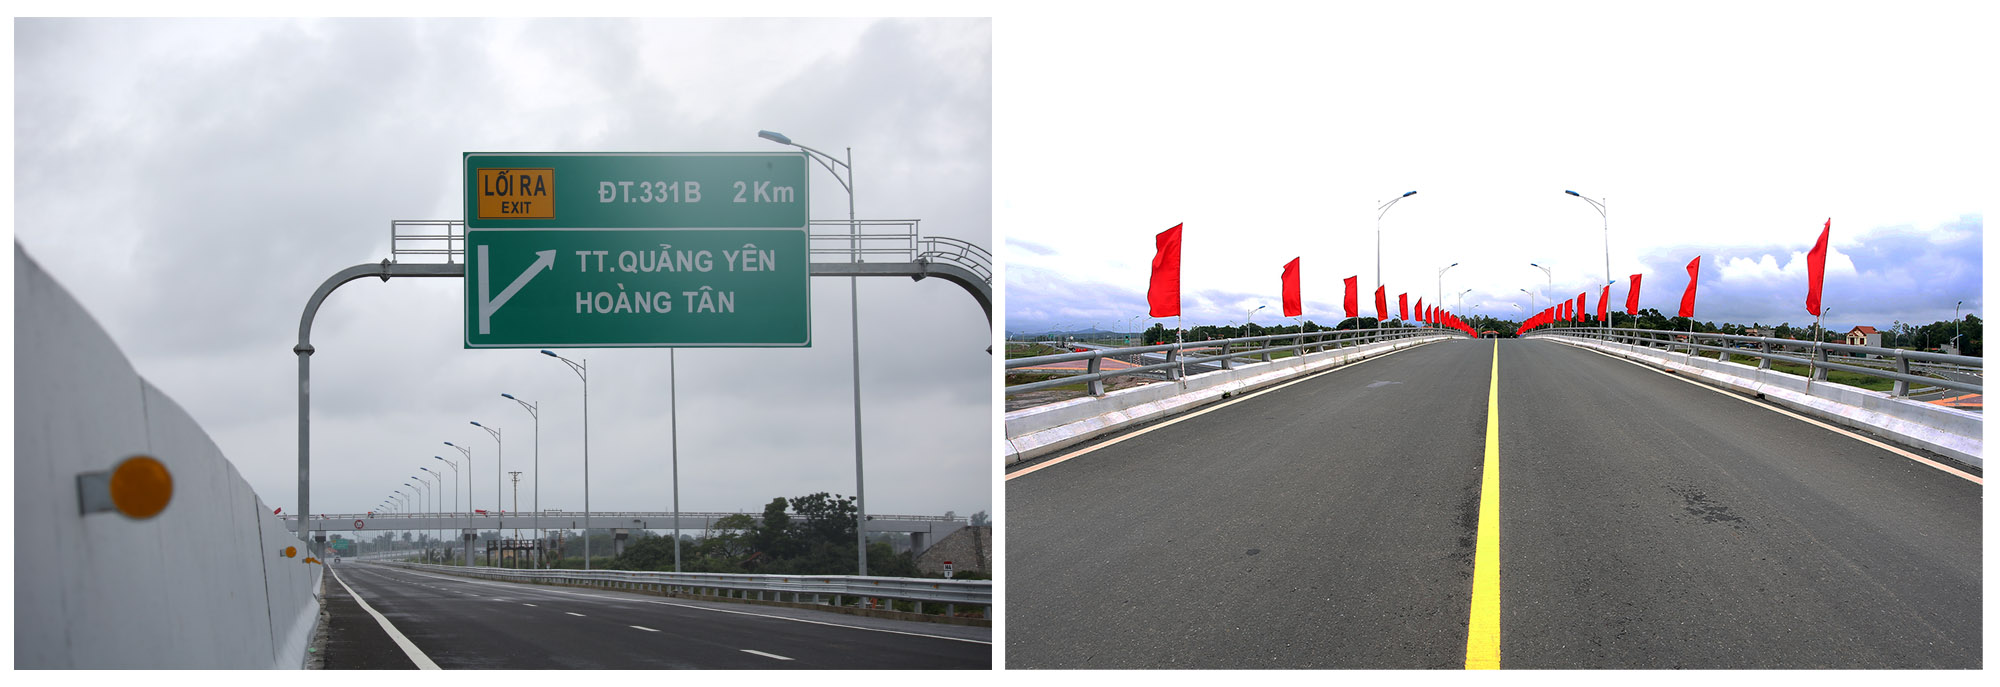 Nút giao Hoàng Tân đã đầu tư hoàn chỉnh, kết nối cao tốc với TX Quảng Yên.